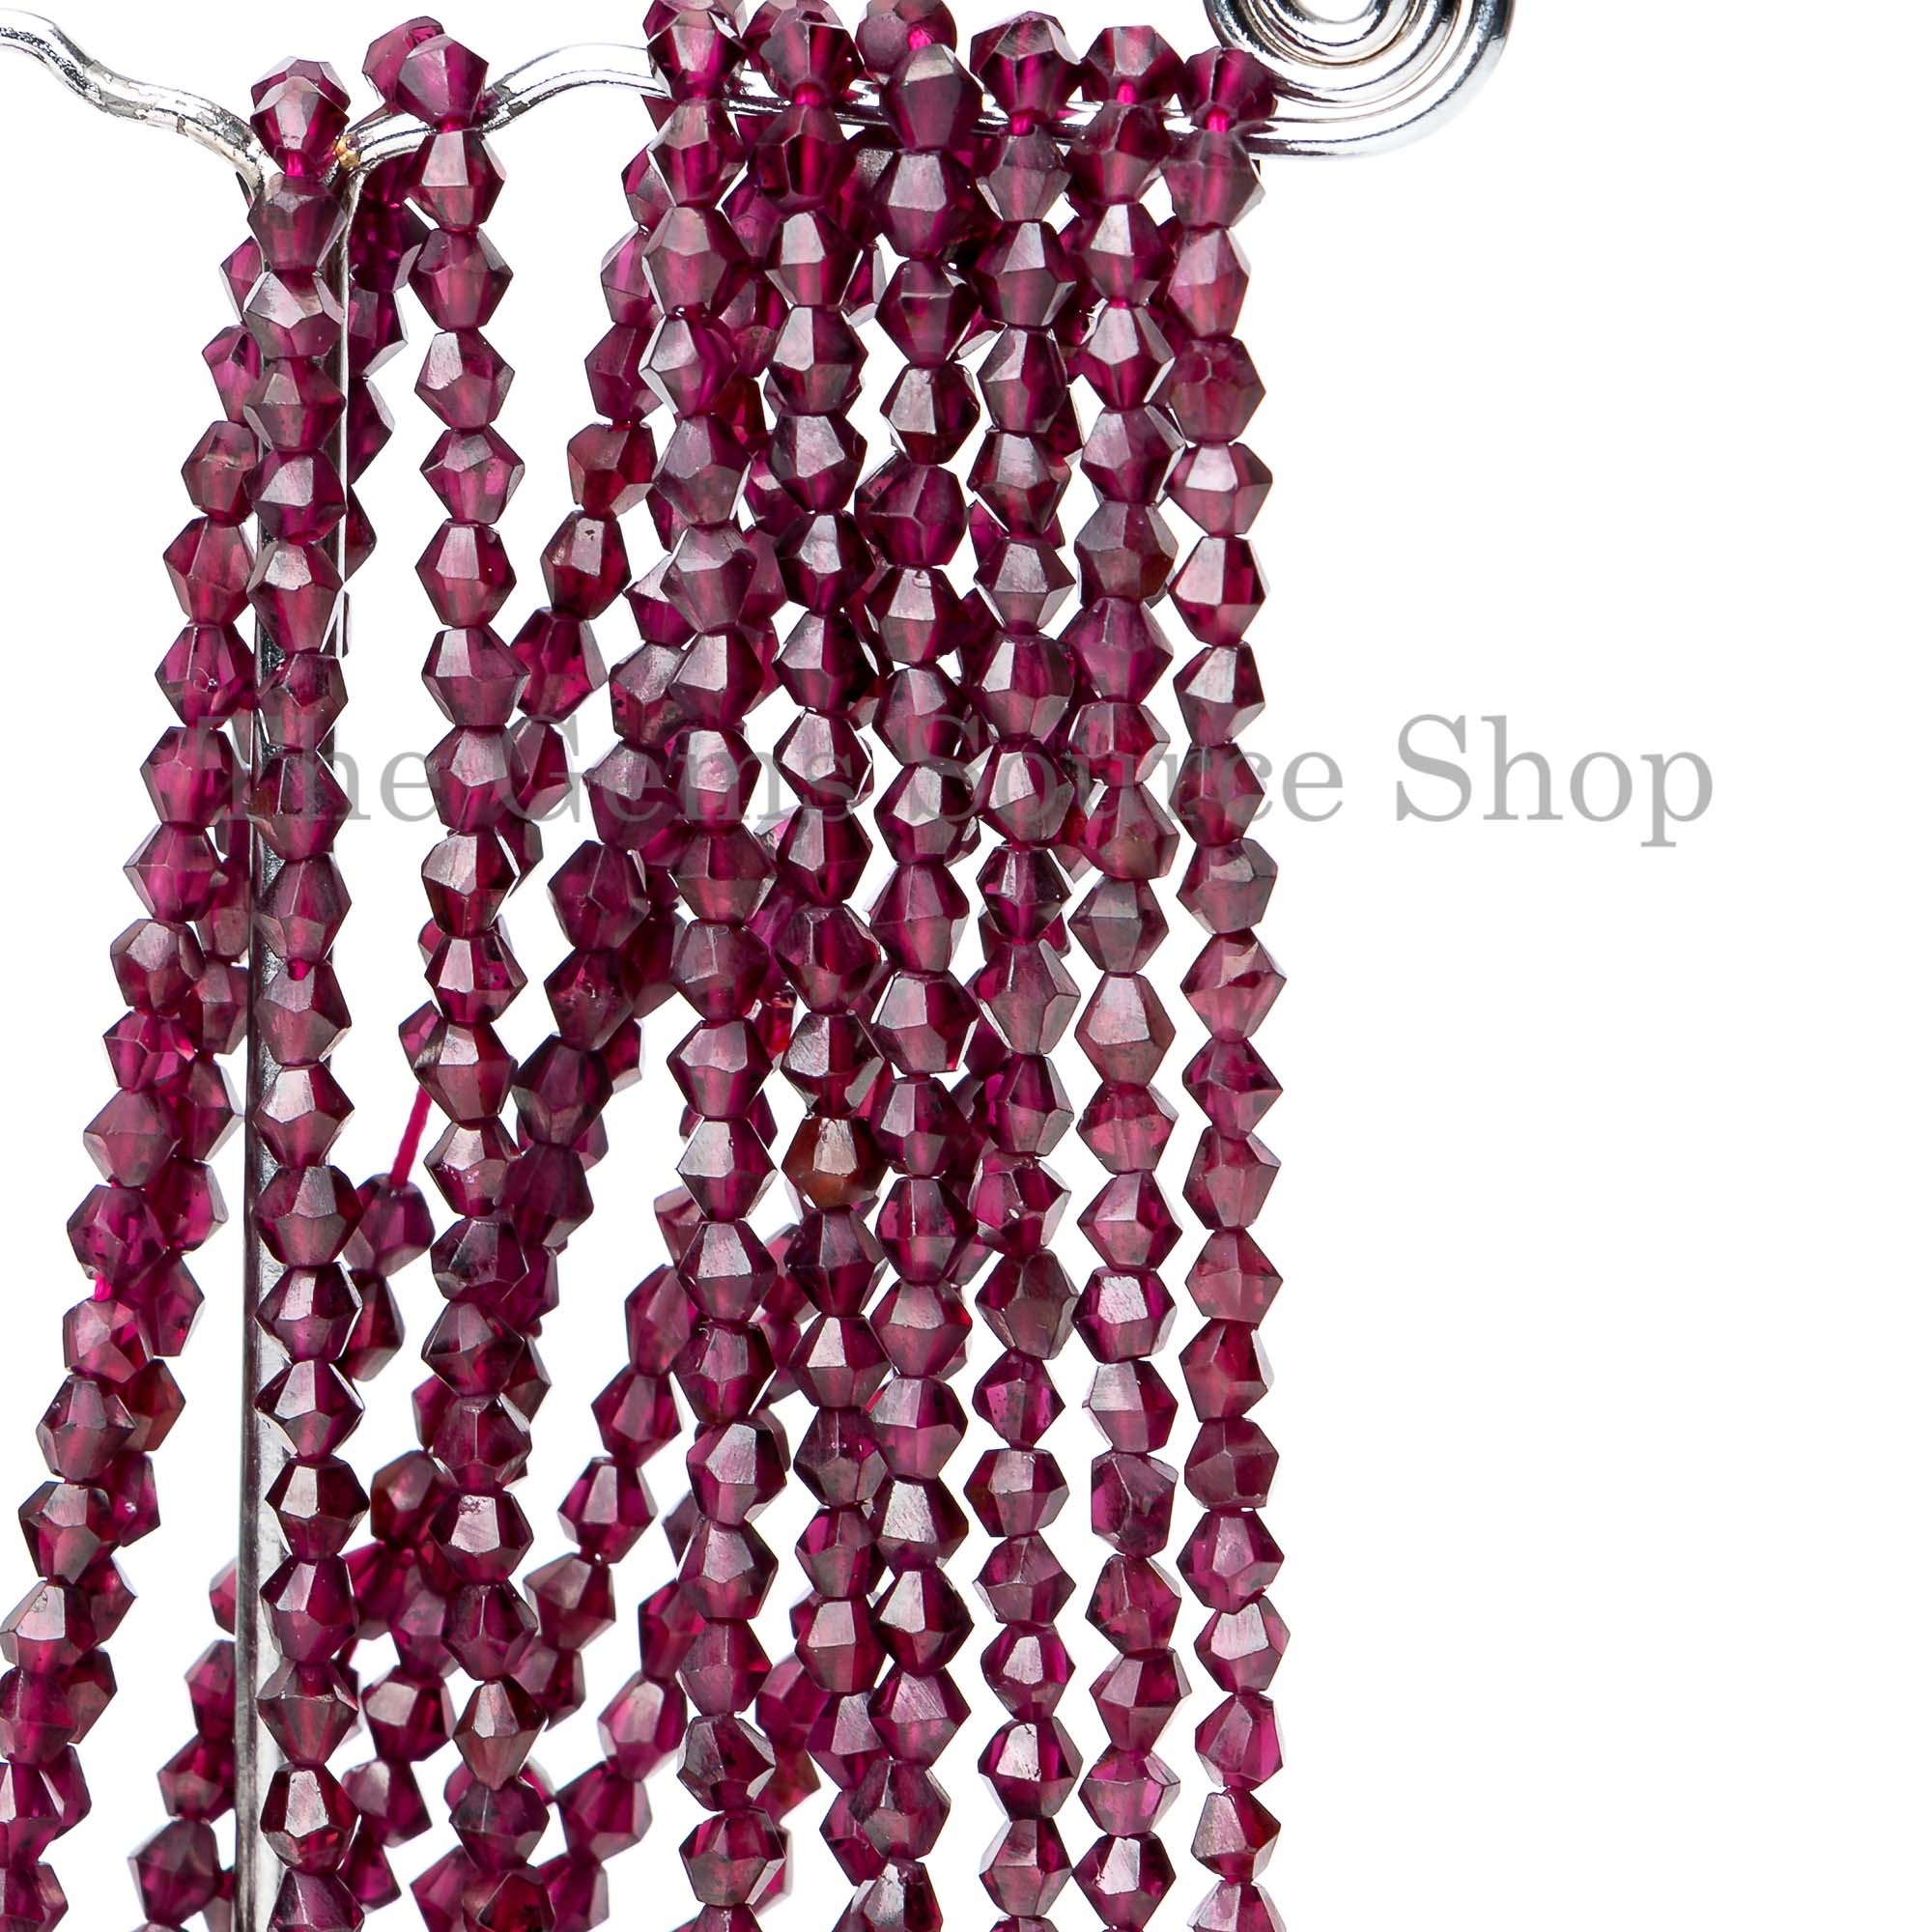 Rhodolite Garnet Faceted Fancy Shape Beads, Rhodolite Garnet Faceted Beads, Garnet Beads